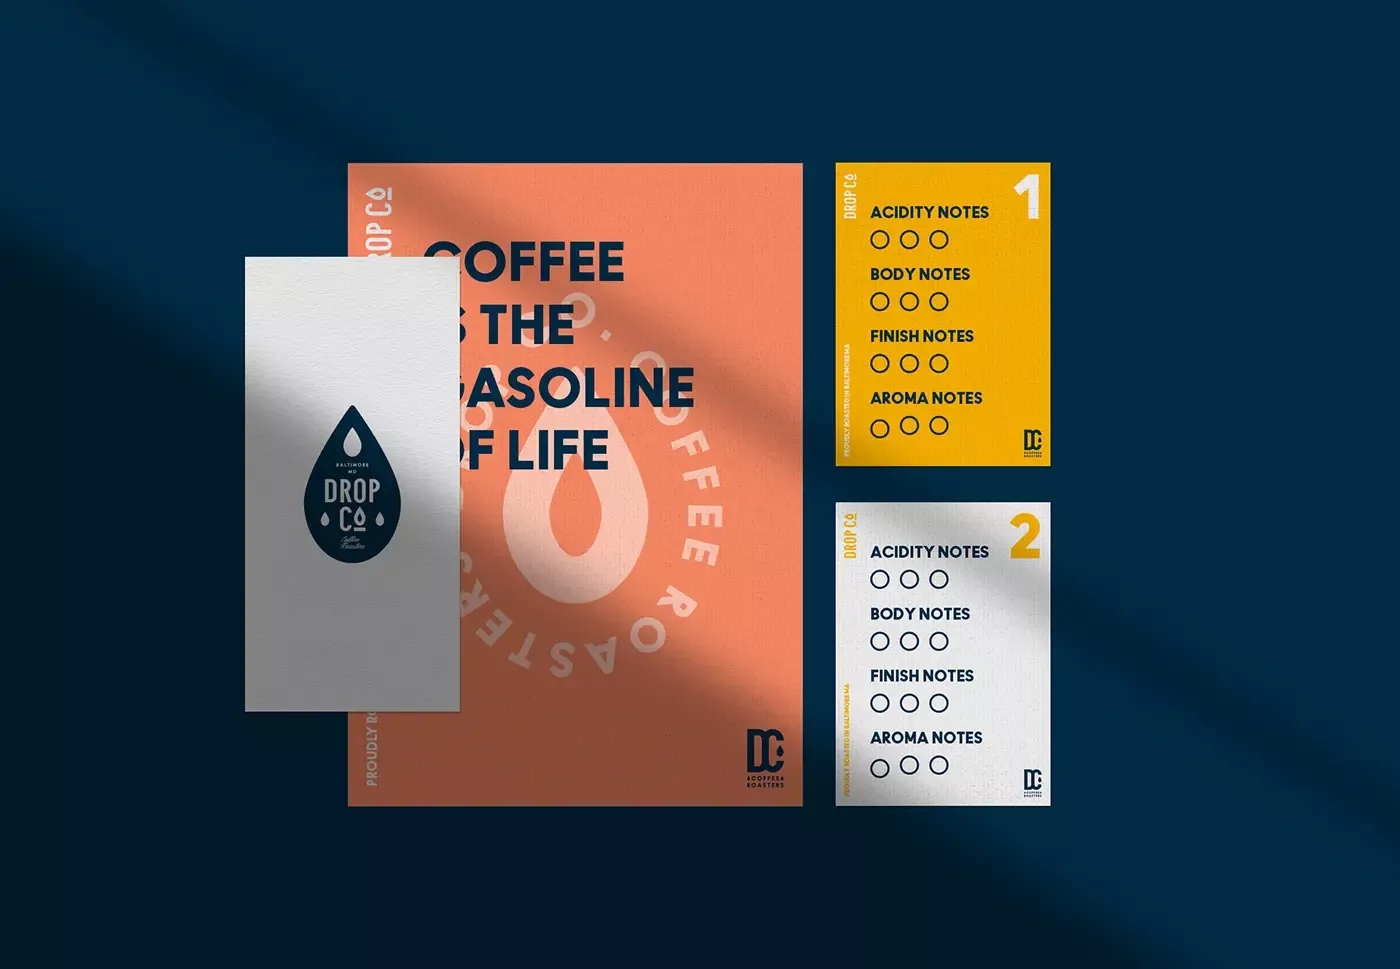 Drop Co.咖啡品牌识别设计